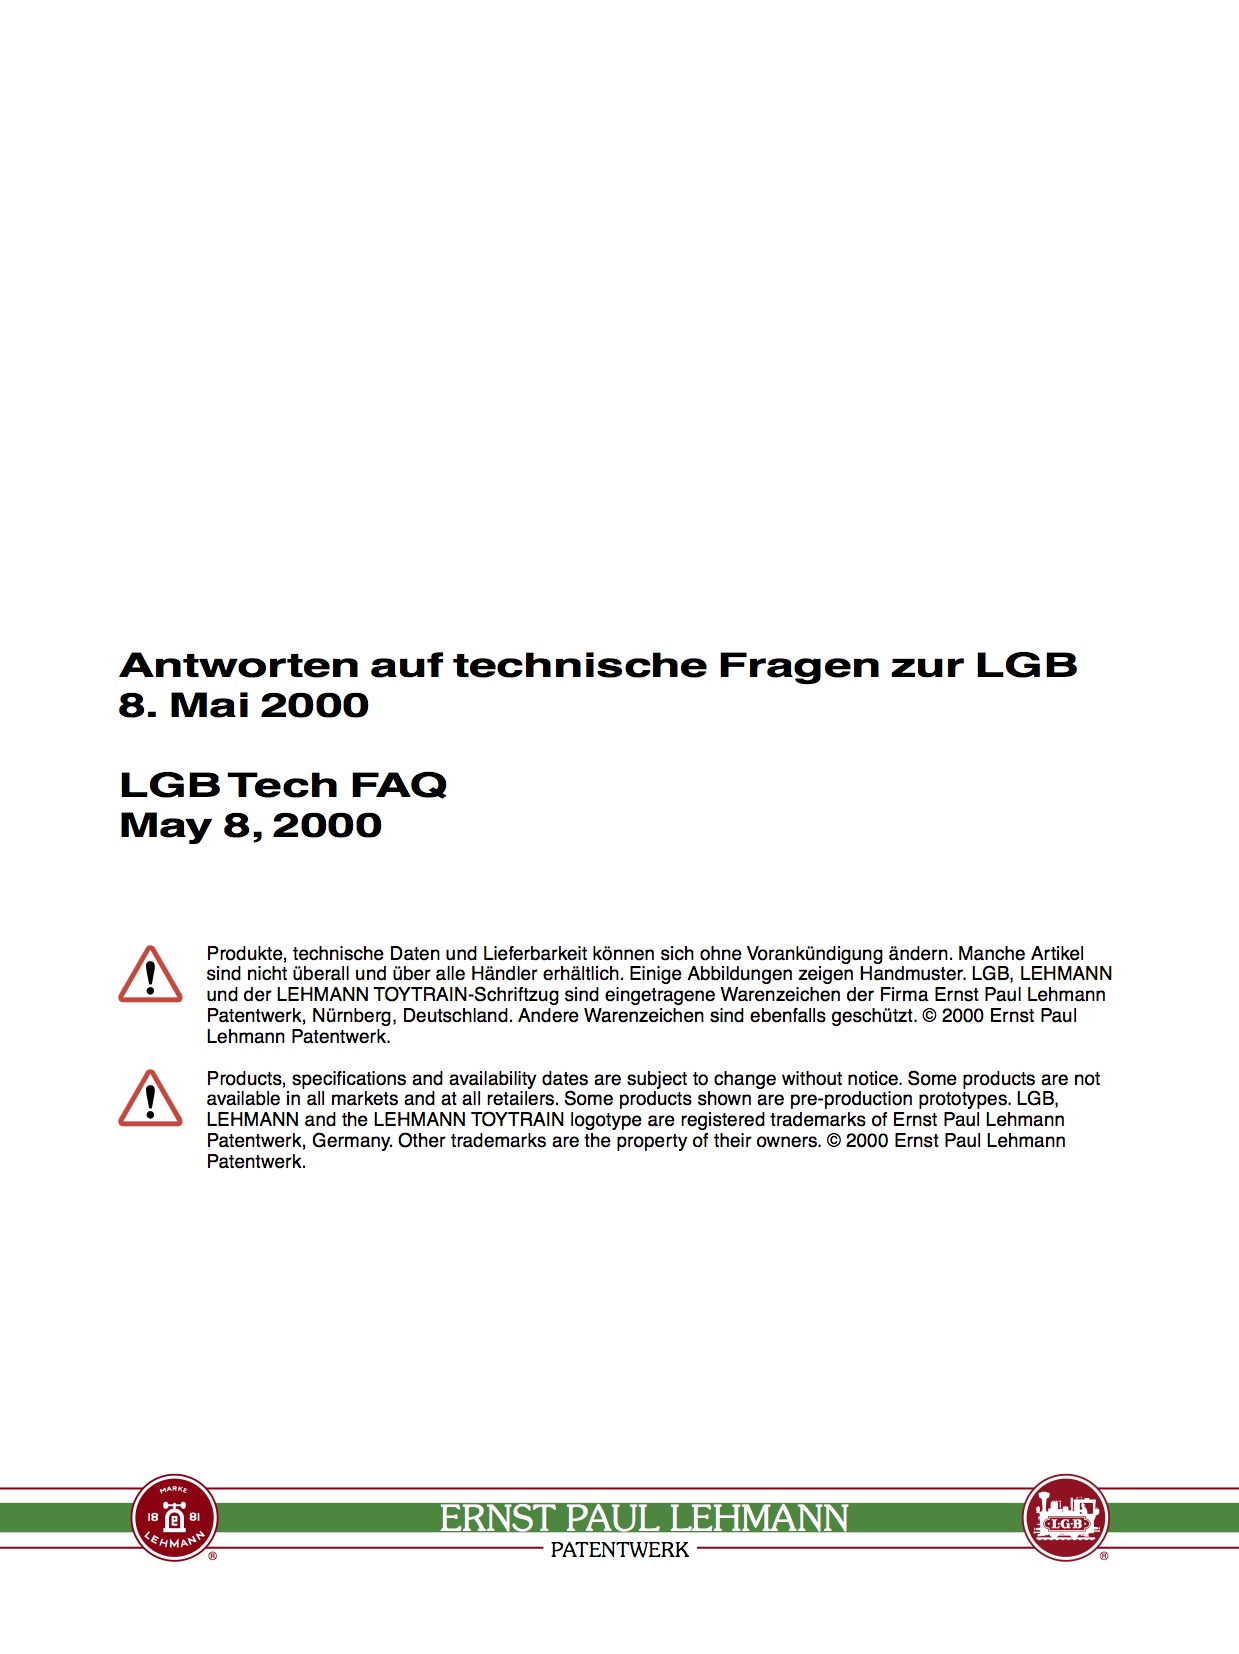 LGB White Paper 2000 - Technical FAQ, Deutsch/English